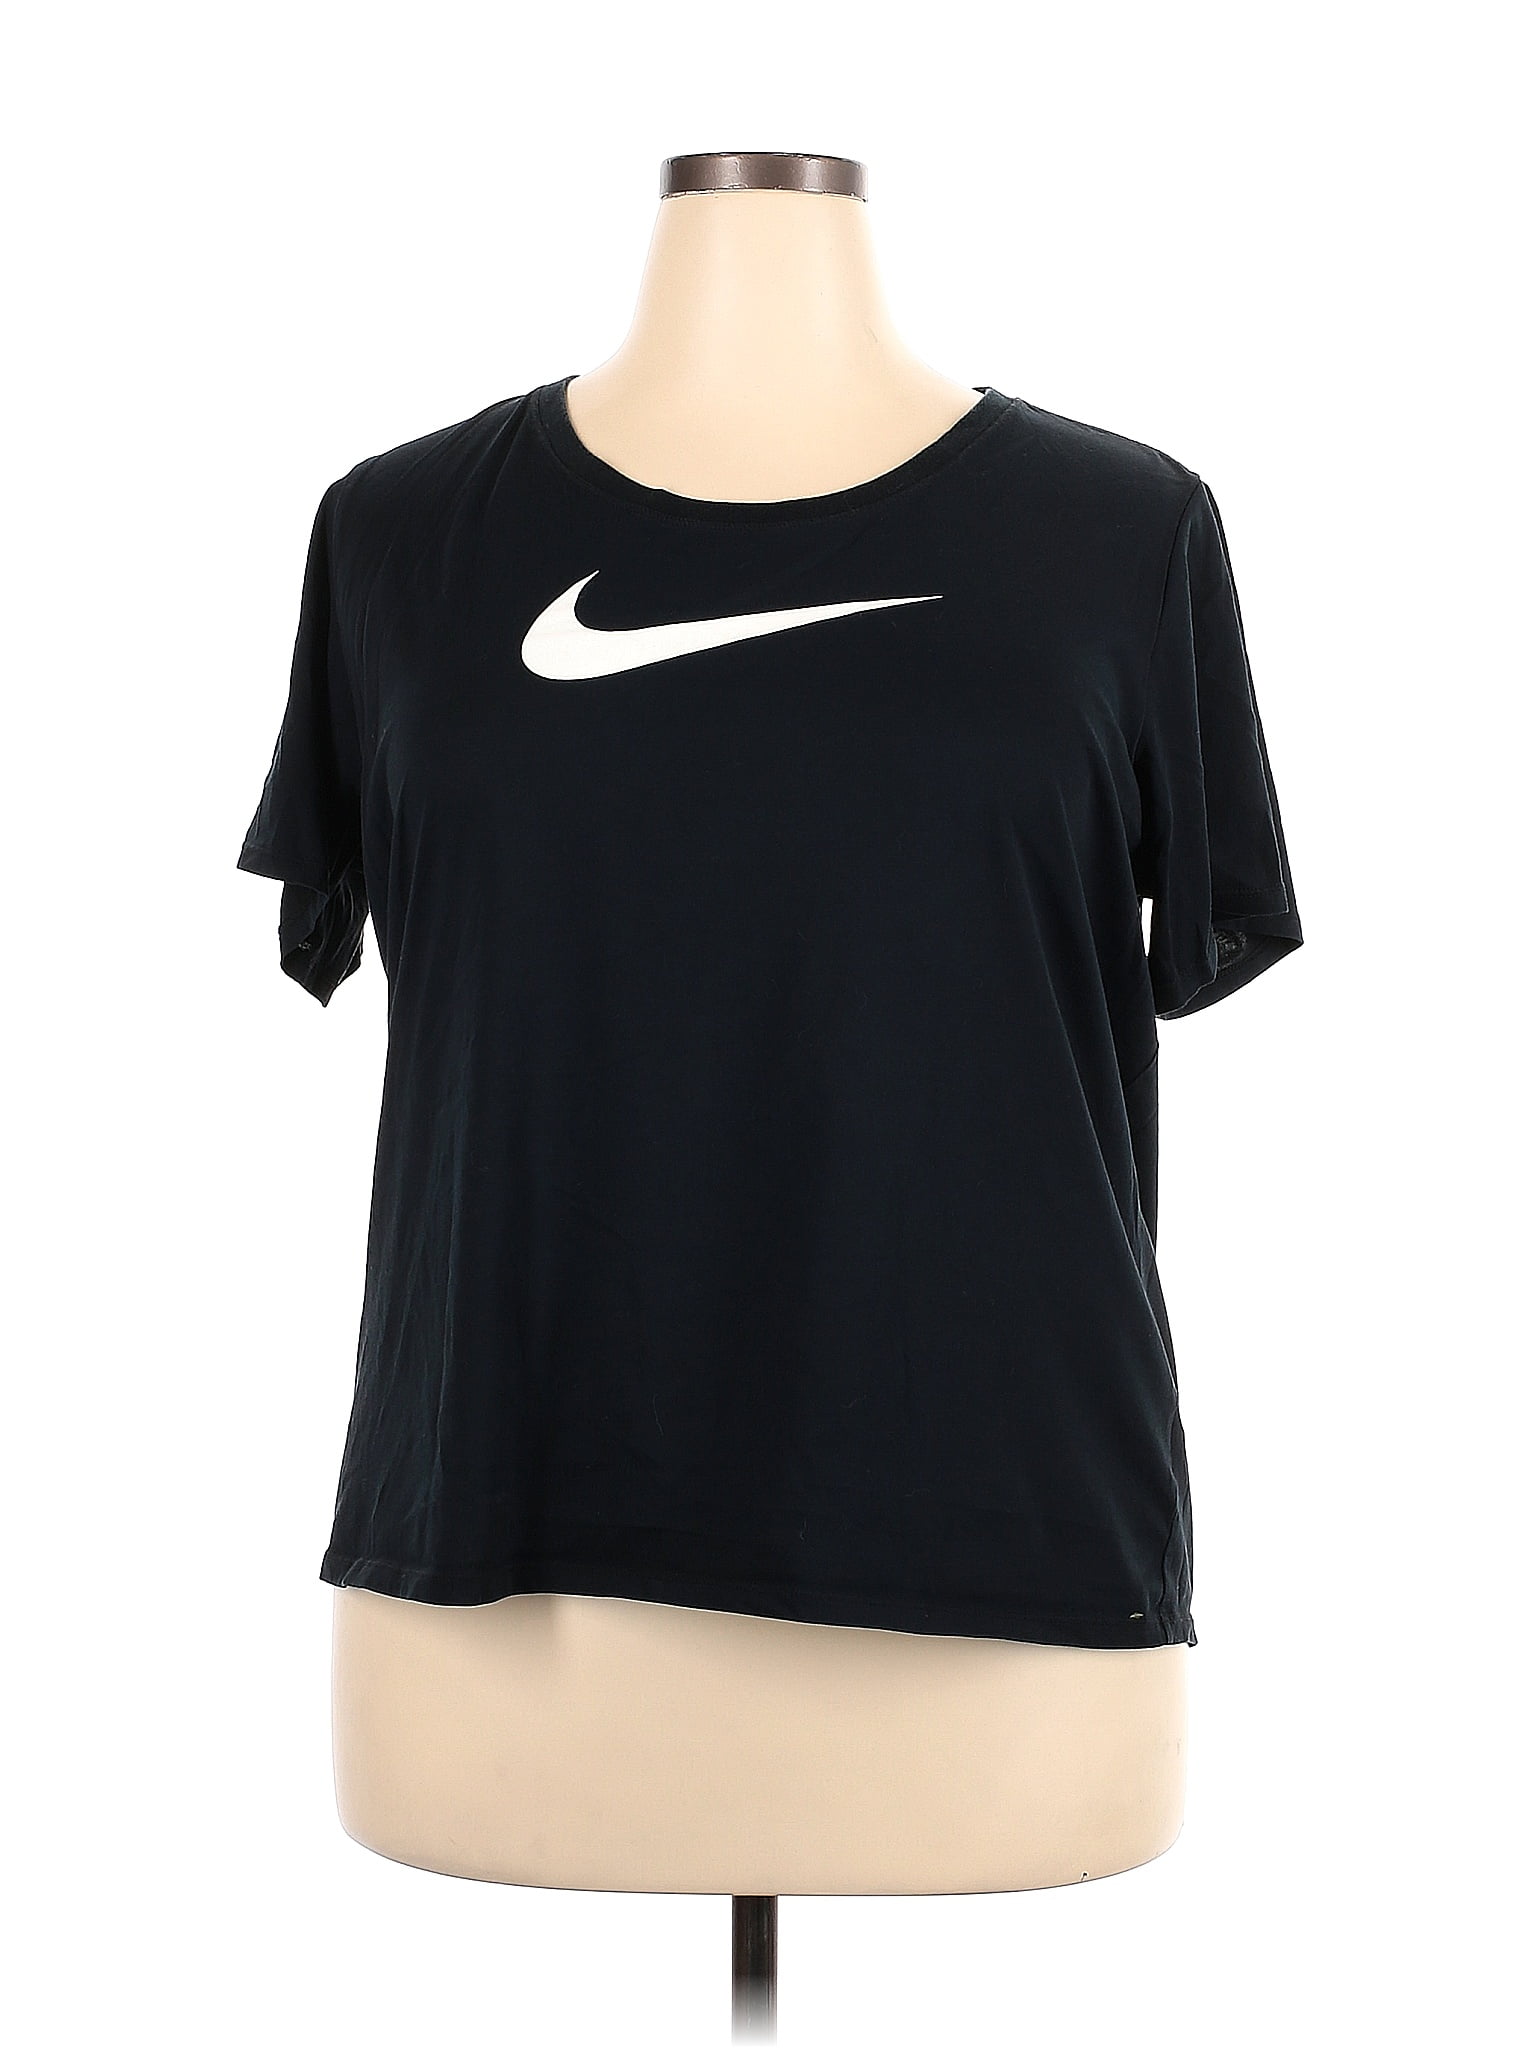 Nike Color Block Black Active T-Shirt Size 2X (Plus) - 59% off